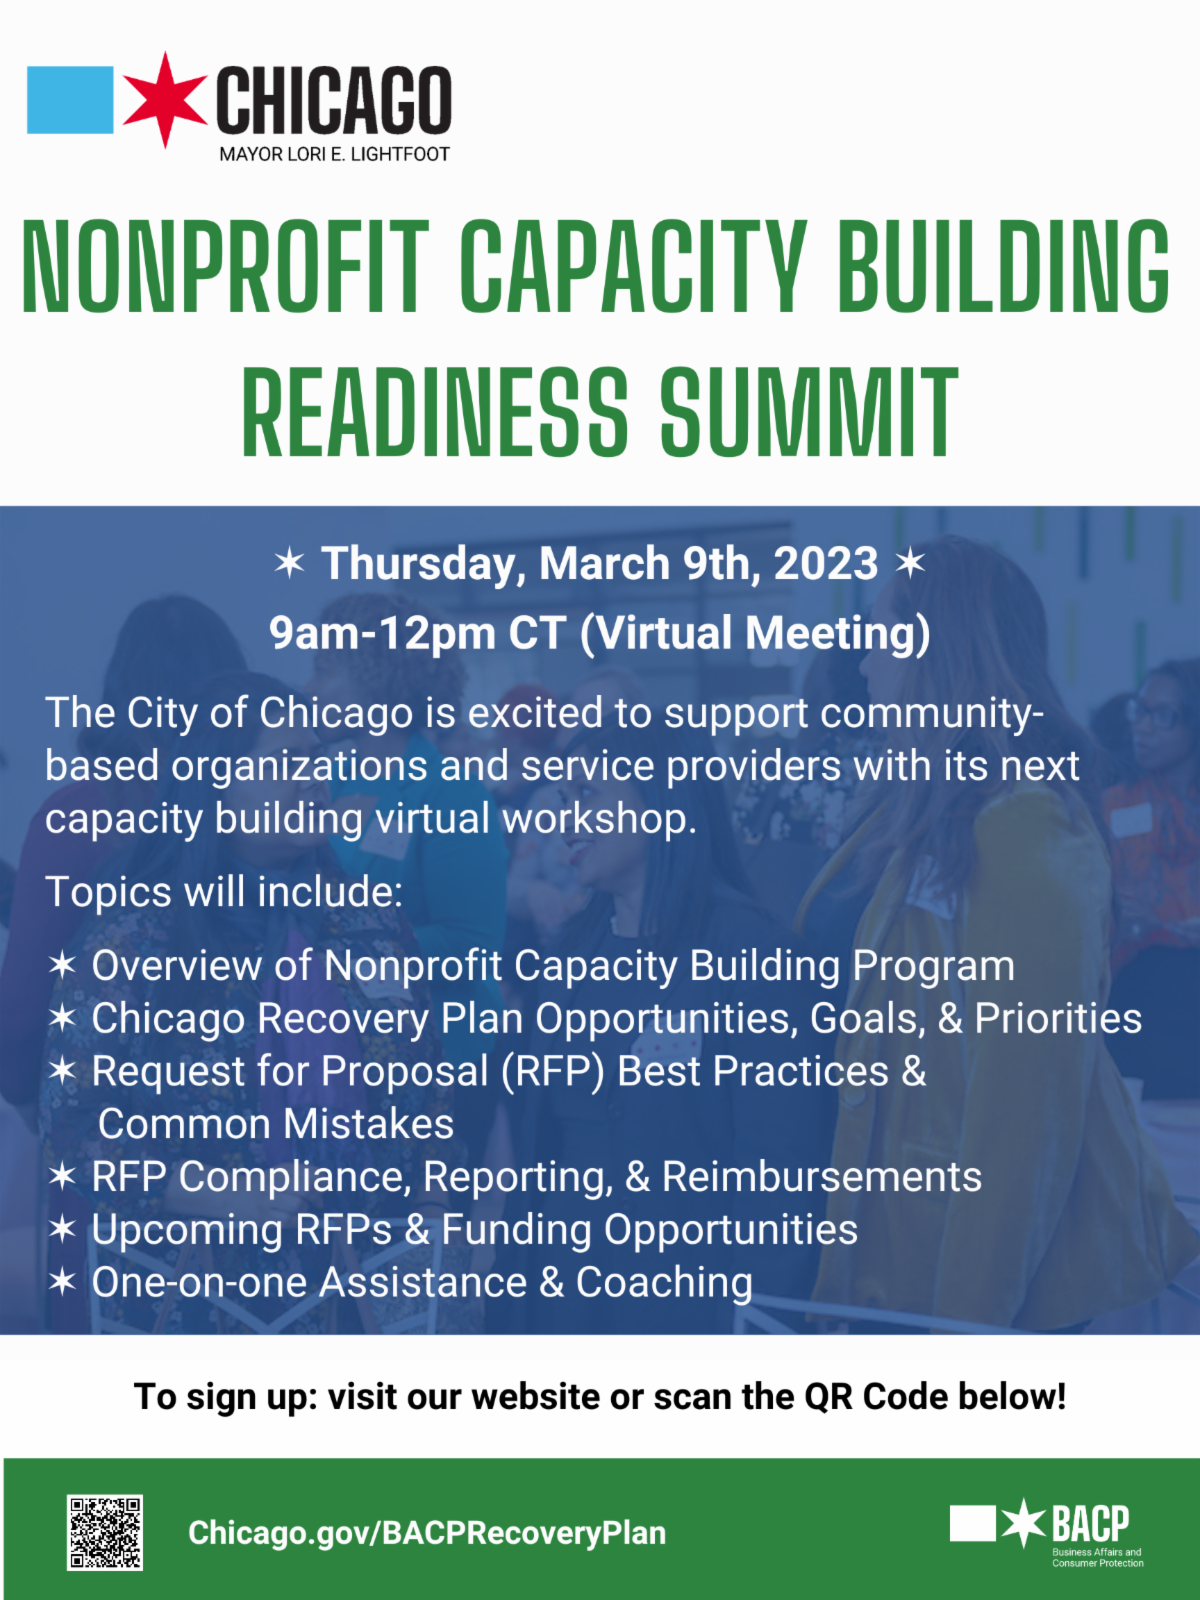 Nonprofit Readiness Summit